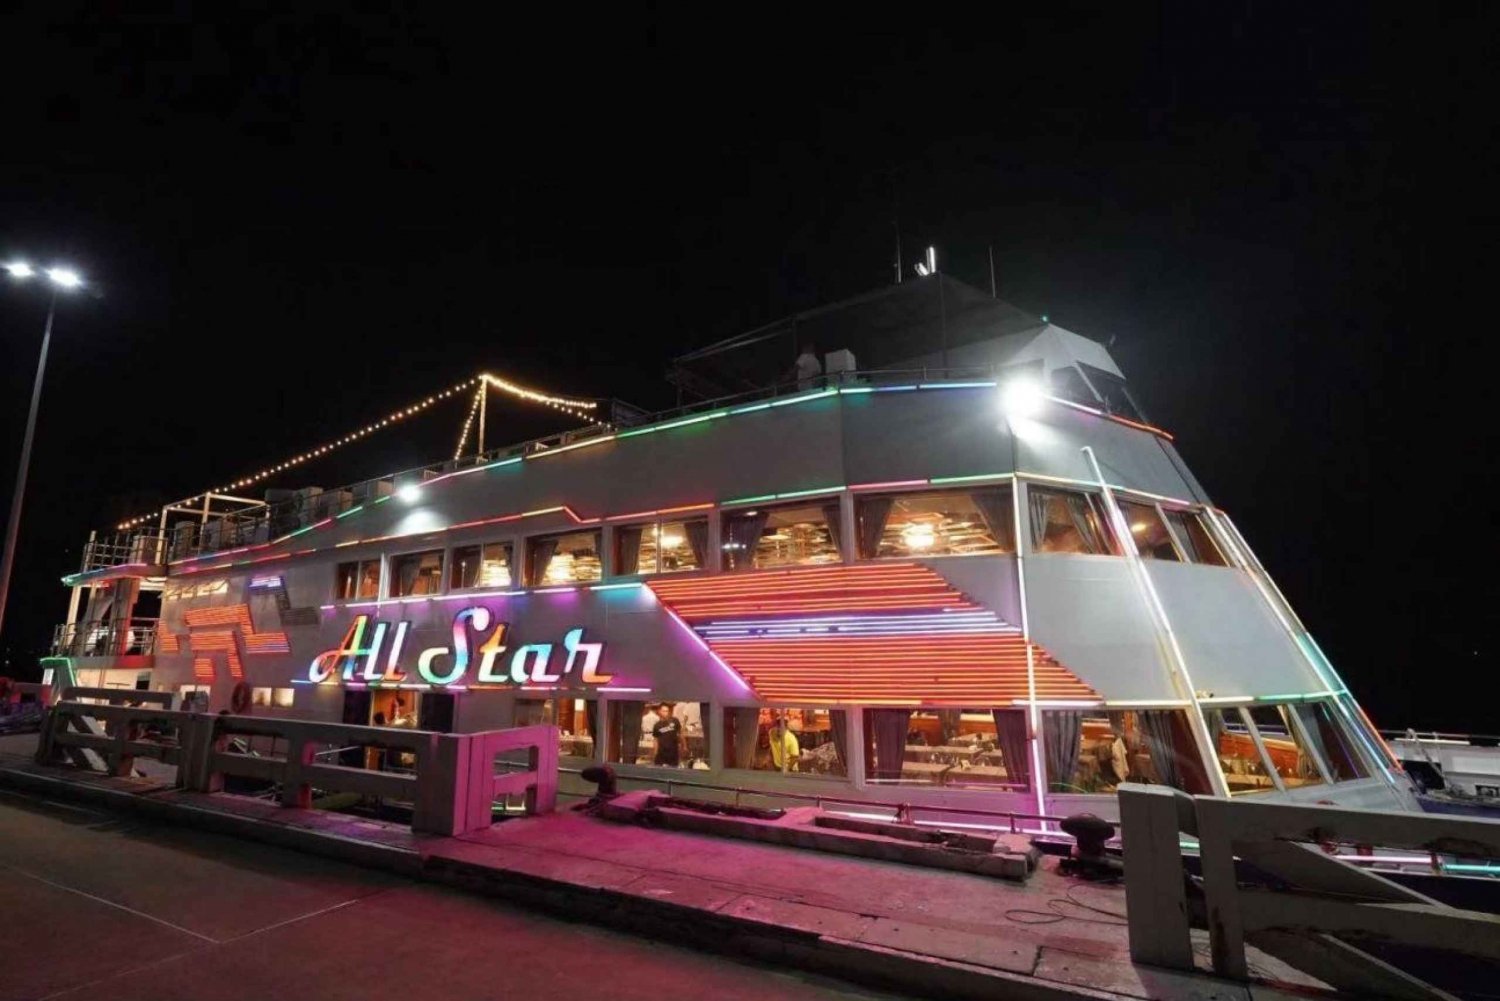 Pattaya: Crociera con cena all star, spettacolo di cabaret e buffet di birra